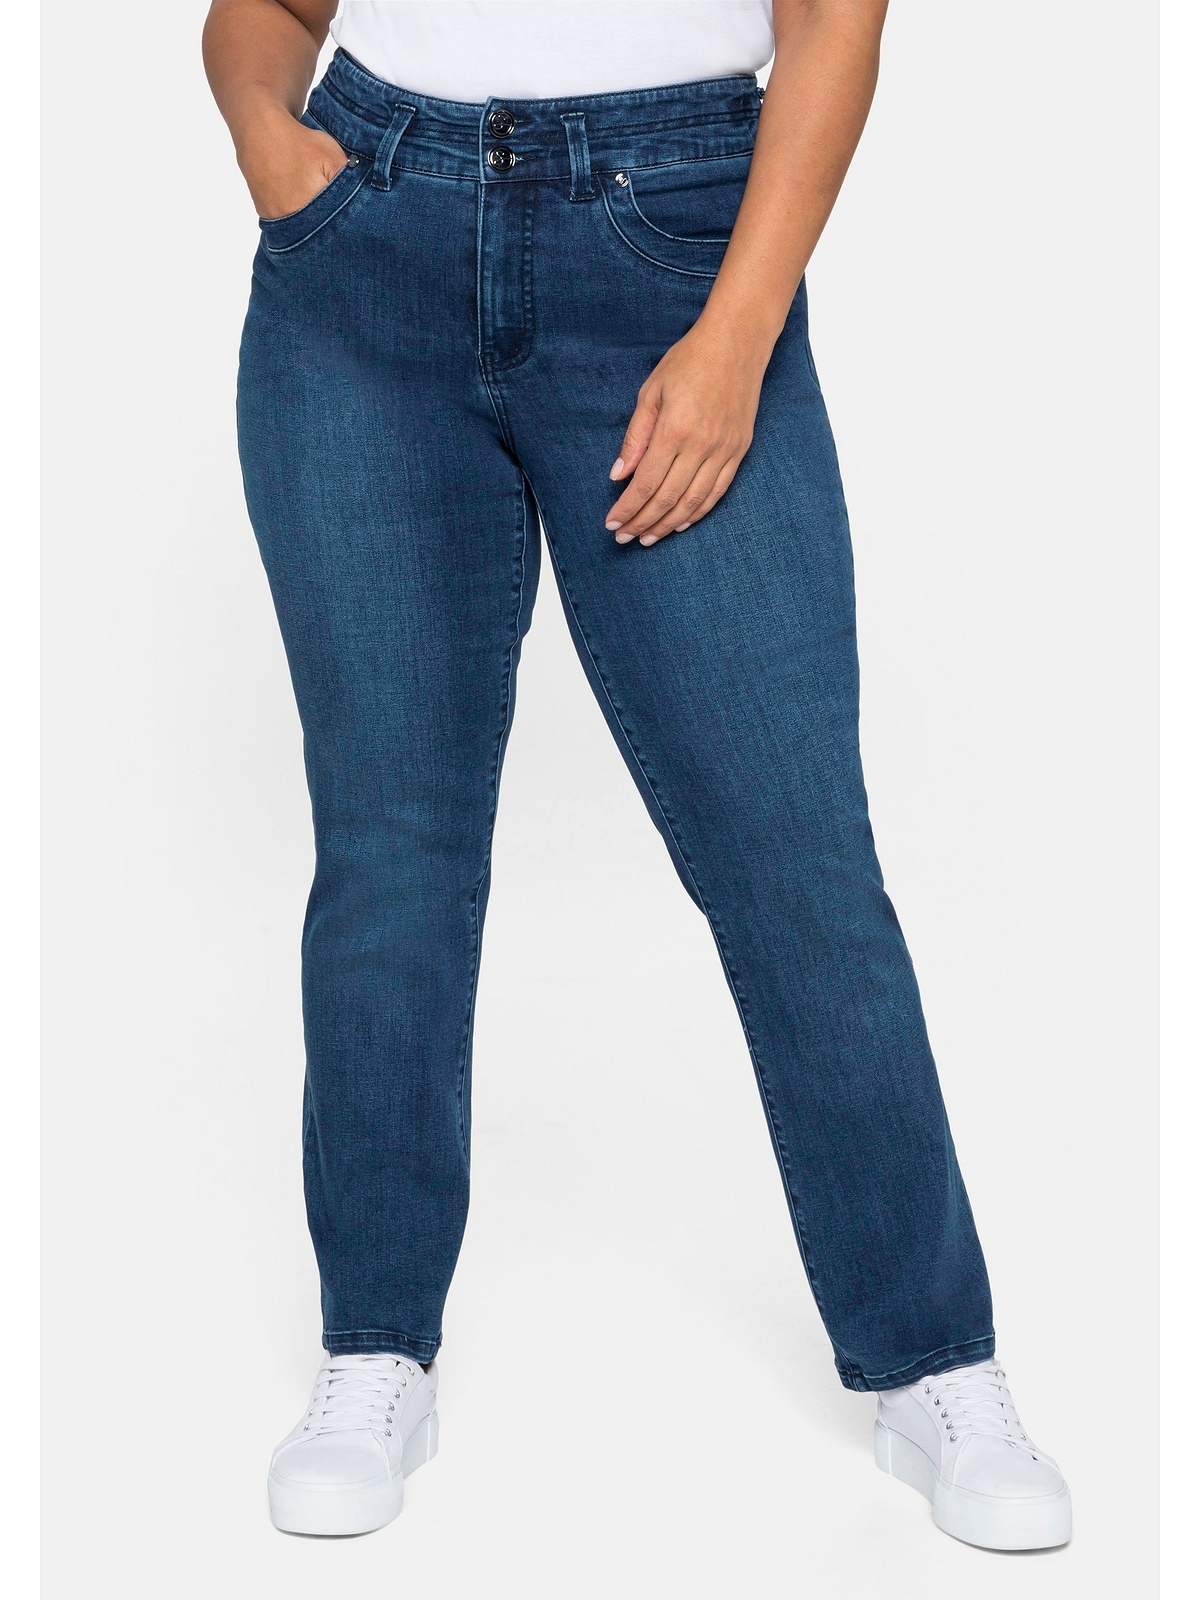 Sheego und Größen«, online »Große Jeans Taille eine schmale Oberschenkel kräftige für MANUELA Gerade